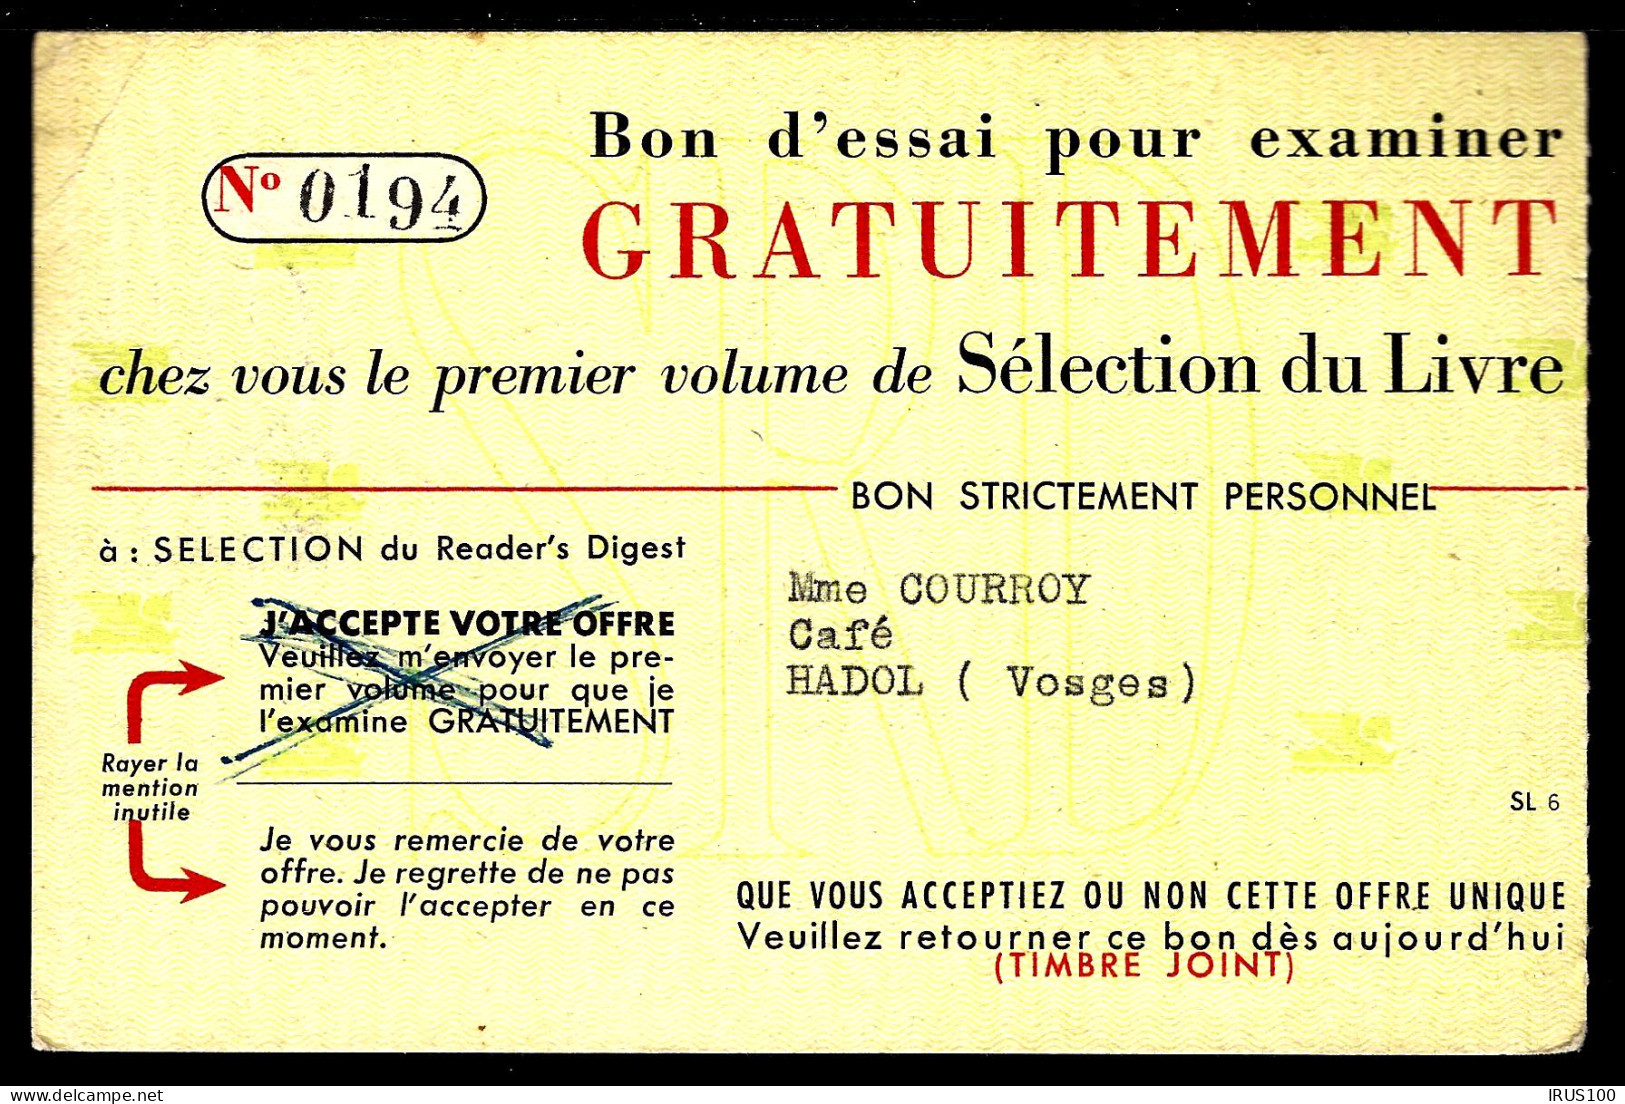 LETTRE DE HADOL - VOSGES - 1955 - BON RETOUR TIMBRE JOINT...READER'S DIGEST - Covers & Documents